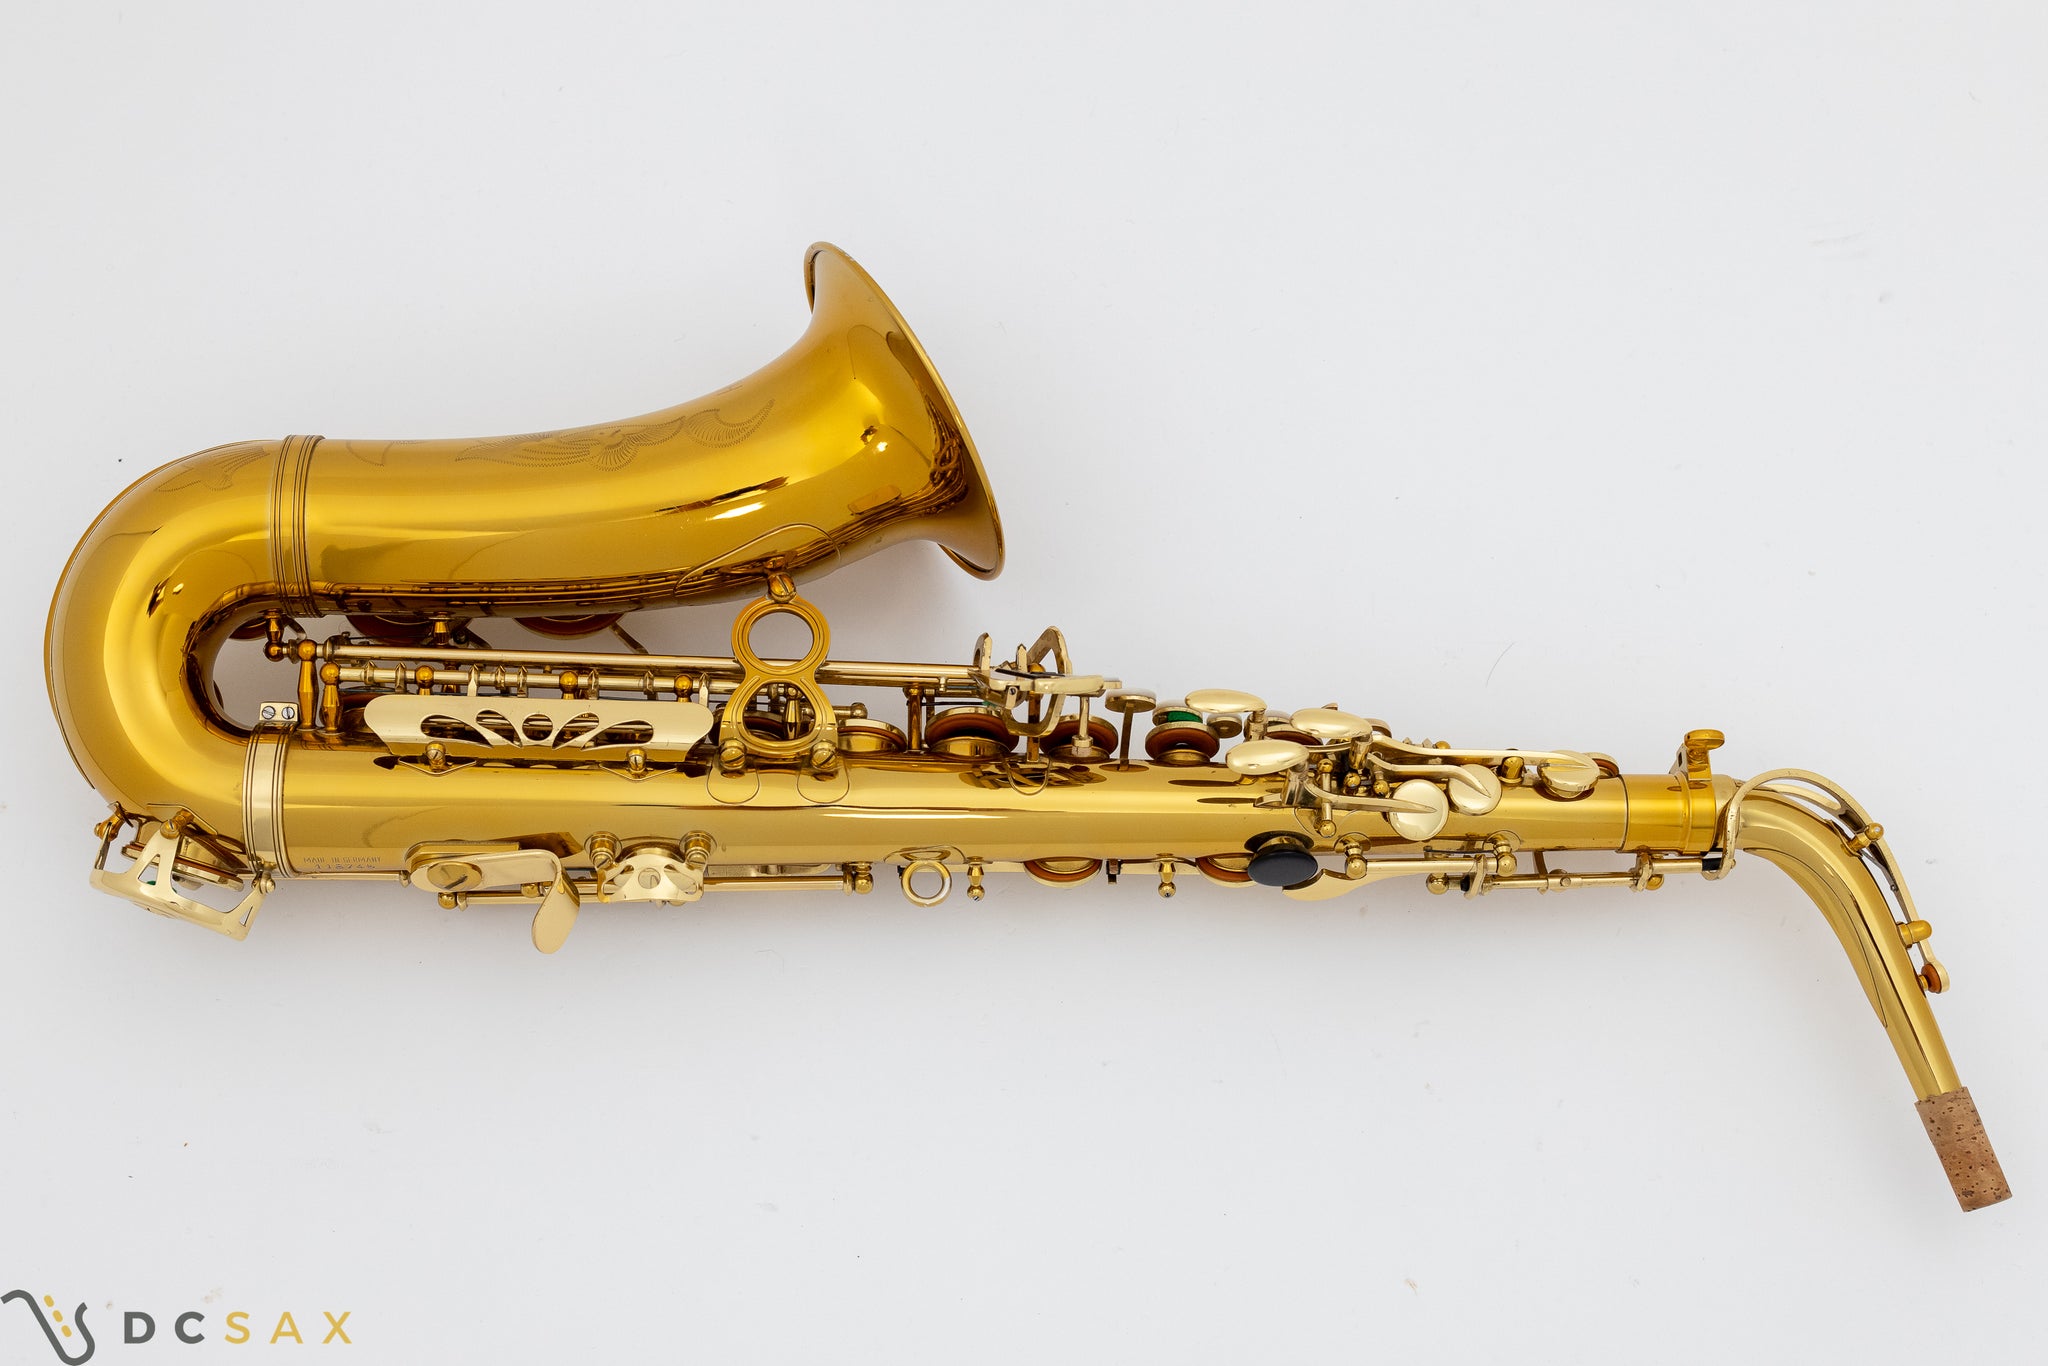 Keilwerth SX90R Alto Saxophone, Video, Near Mint